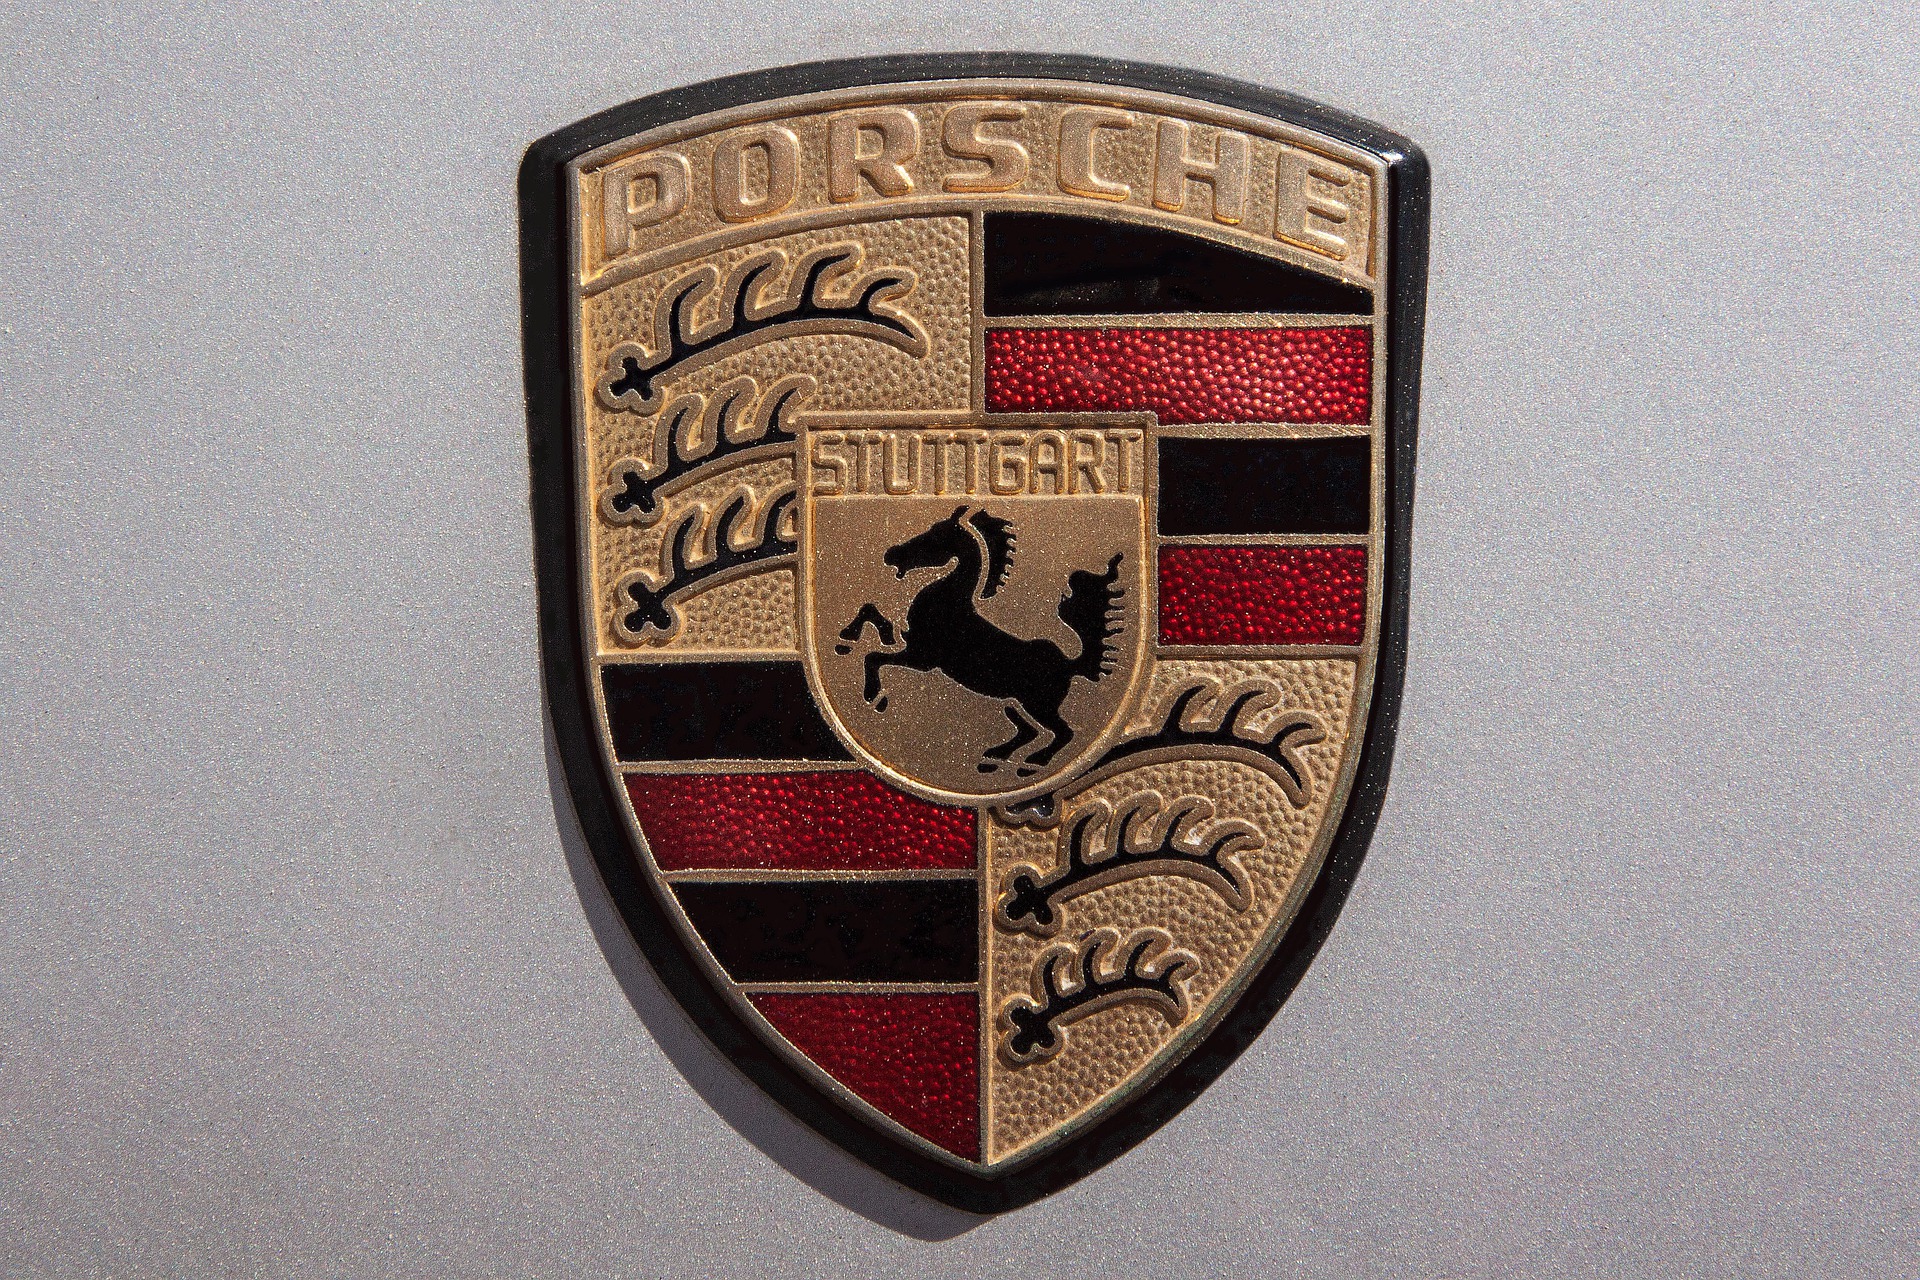 Porsche estreia na Bolsa de Valores da Alemanha com valor histórico